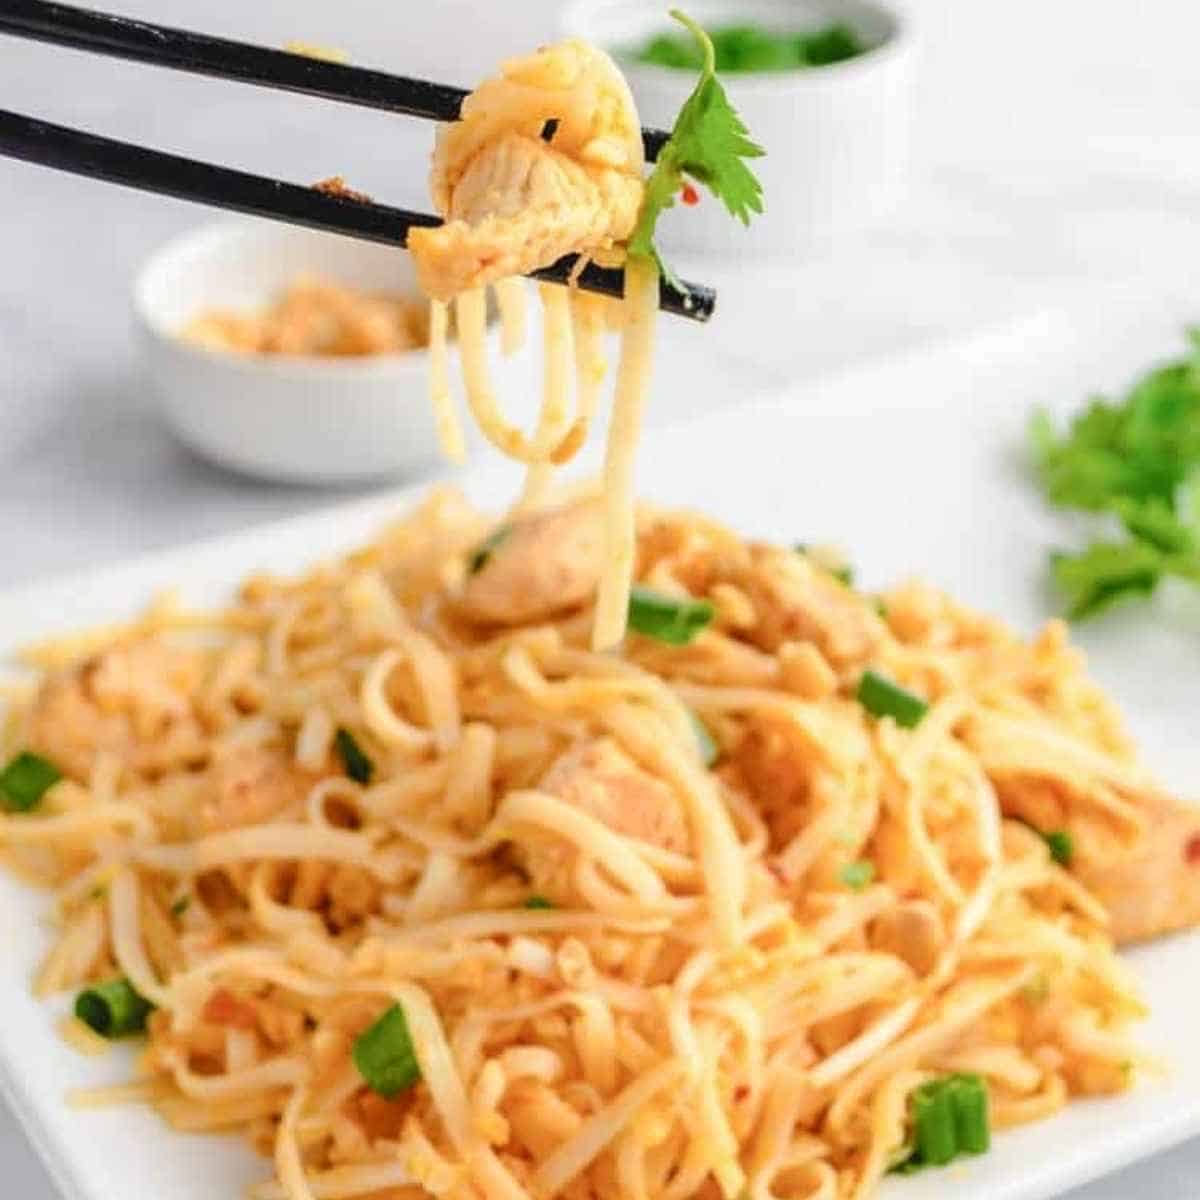 Keto chicken pad thai - Shirataki: The True Keto Approved Asian Noodle